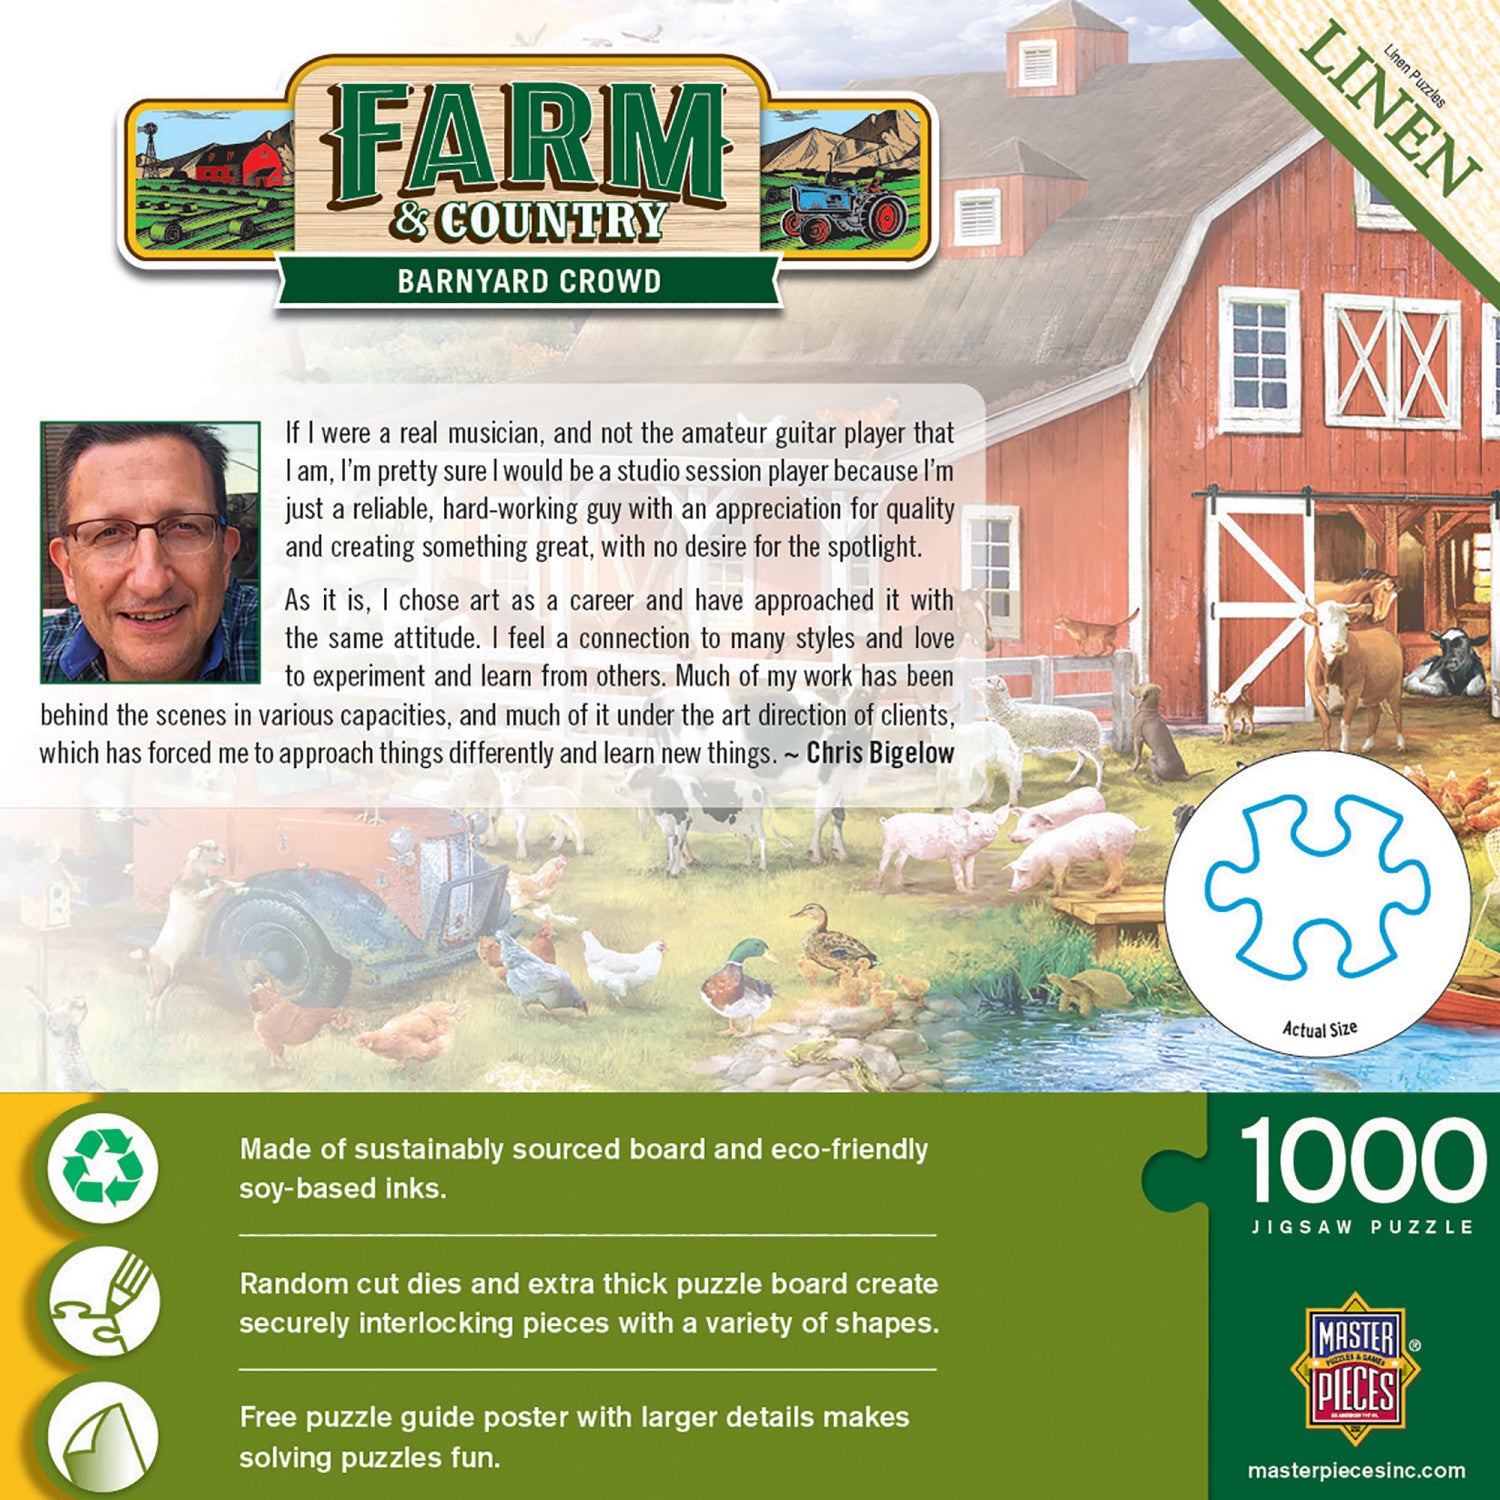 Farm & Country - Barnyard Crowd 1000 Piece Puzzle